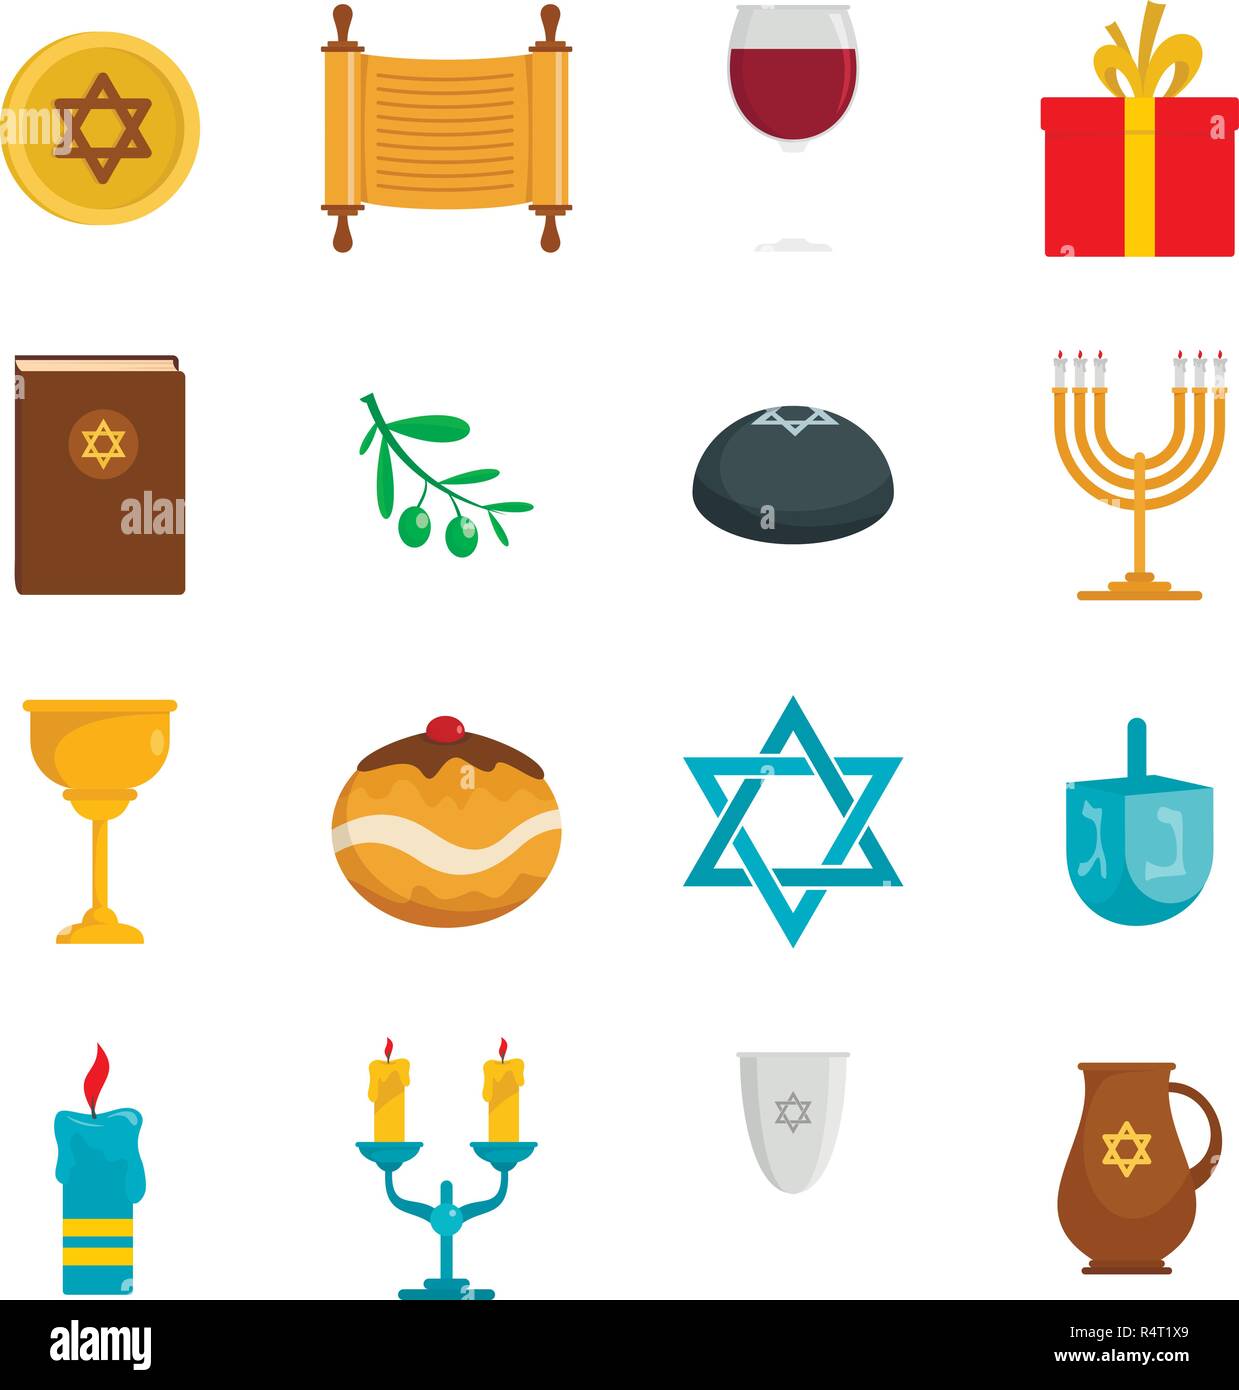 Fête juive Hanoucca icons set. Télévision illustration de 'Hanoucca juive de 16 icônes vector isolated on white Illustration de Vecteur